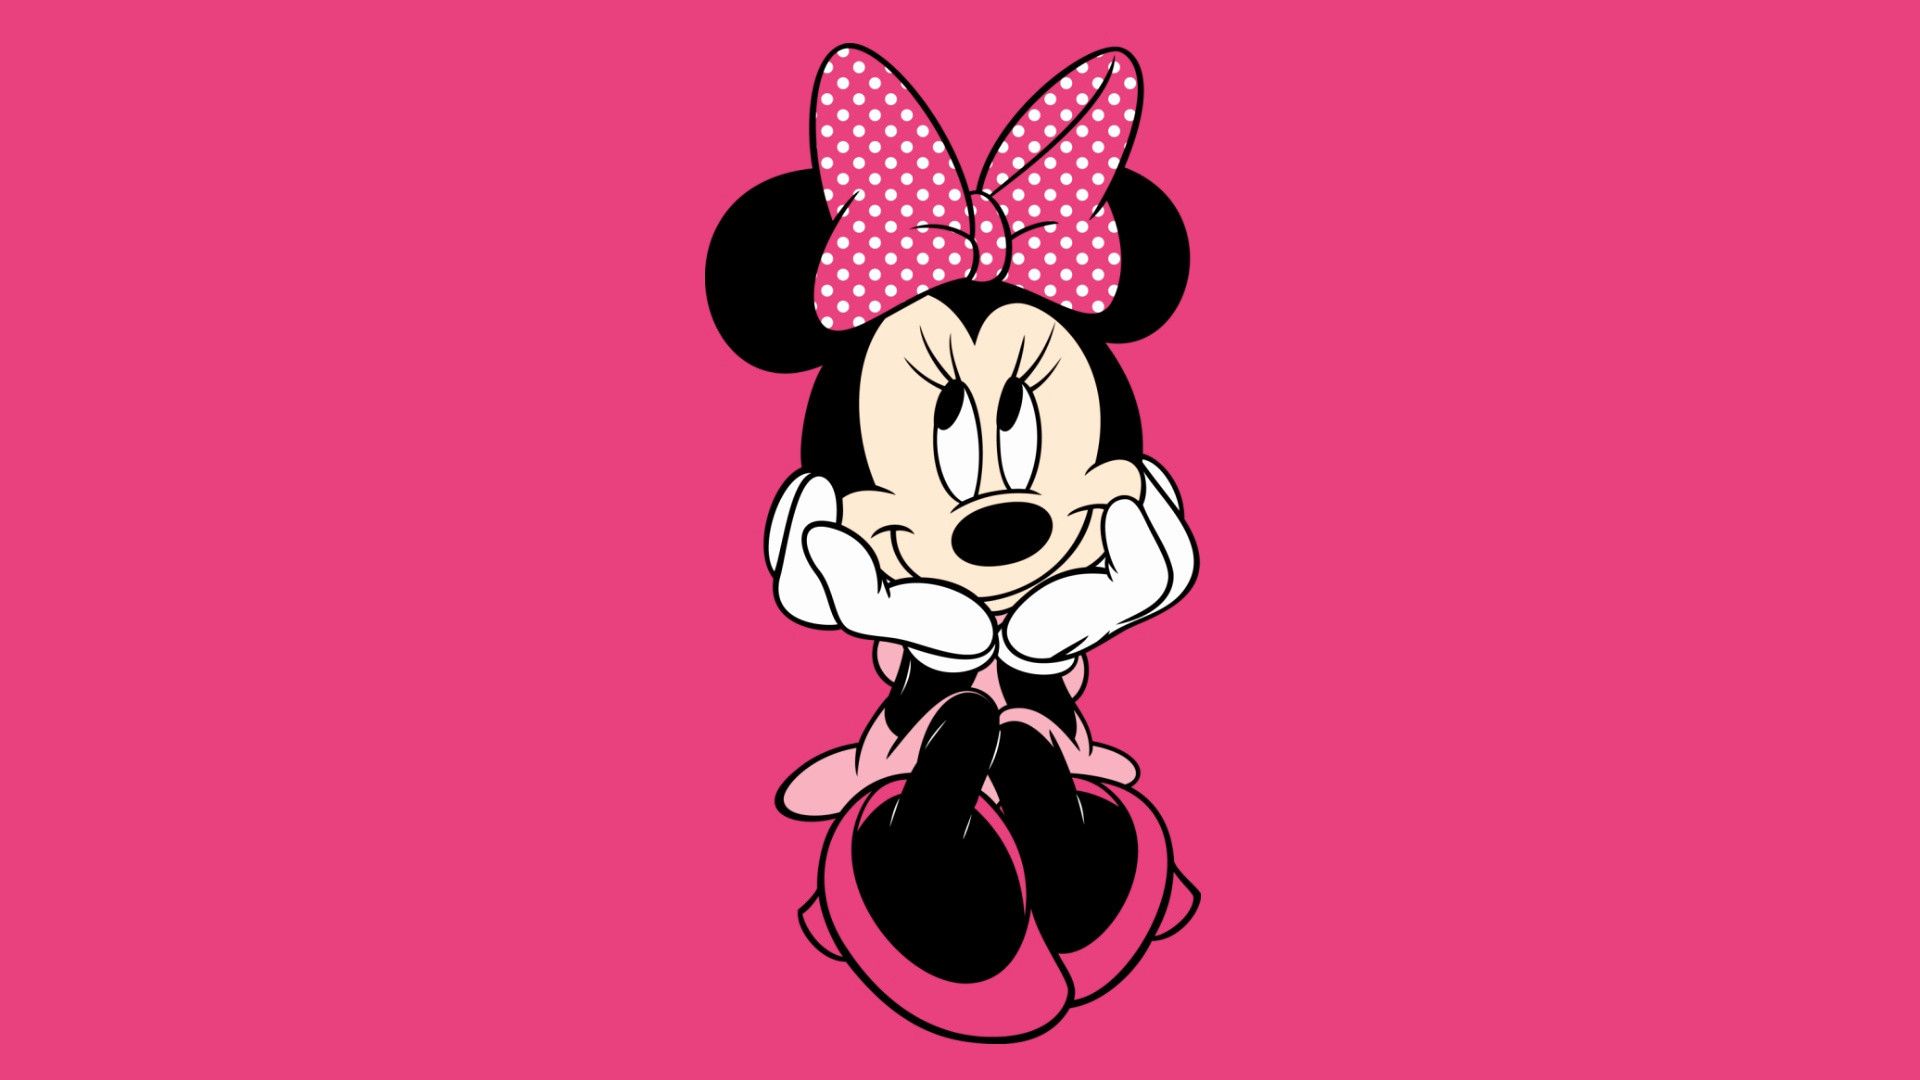 Fondos de Mickey Mouse gratis - Fondo de pantalla de Minnie Mouse para computadora portátil, Hd